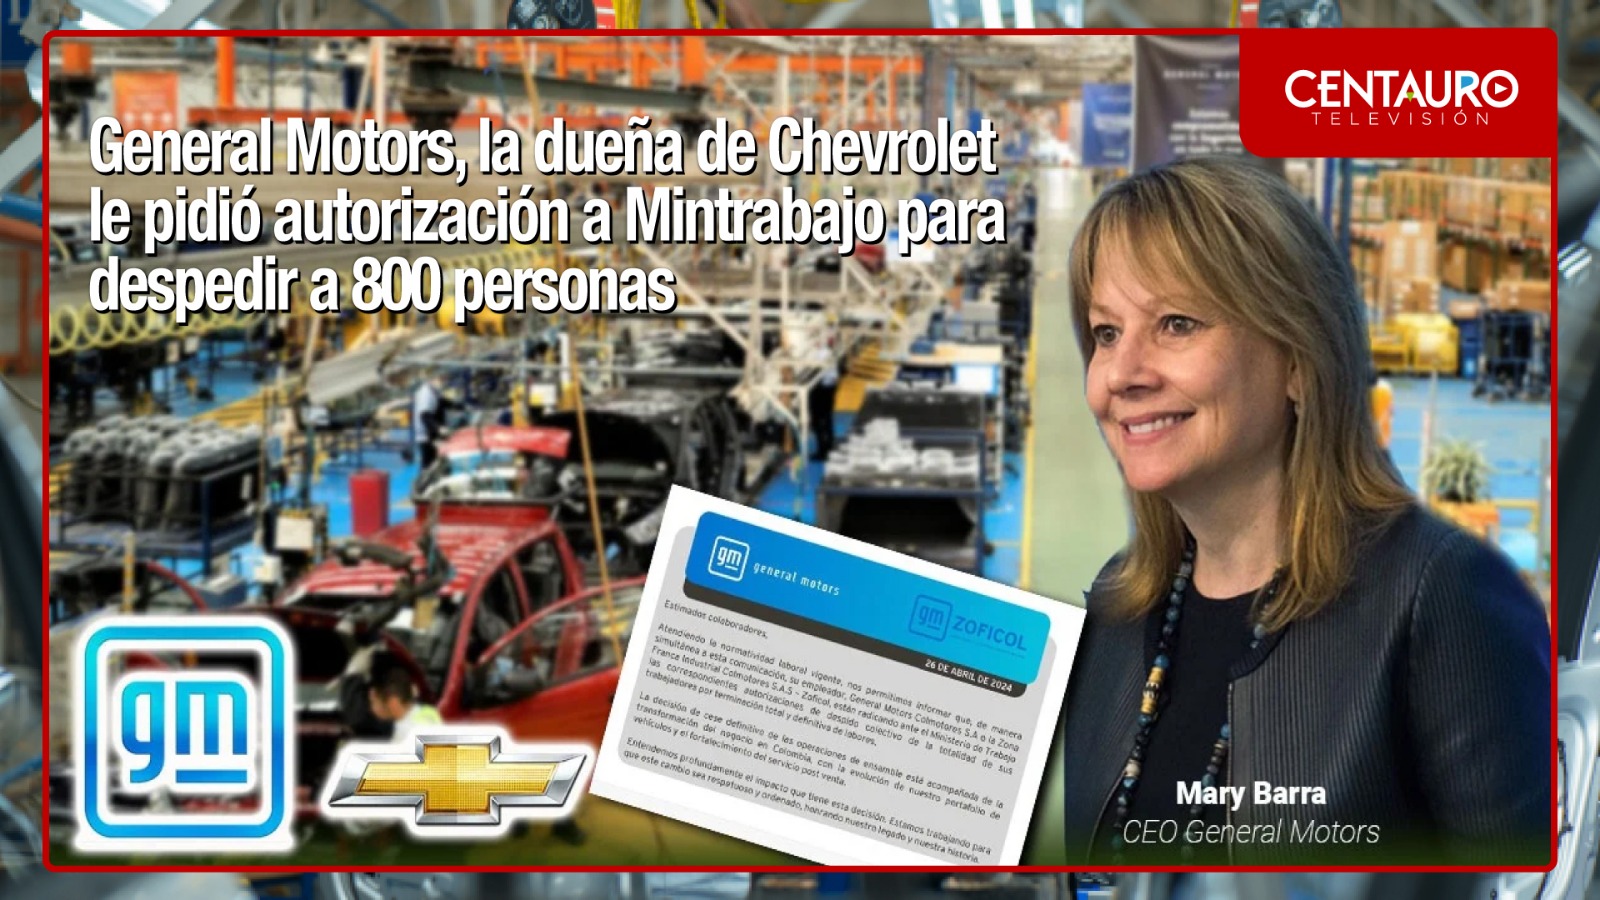 General Motors, la dueña de Chevrolet le pidió autorización a Mintrabajo para despedir a 800 personas.